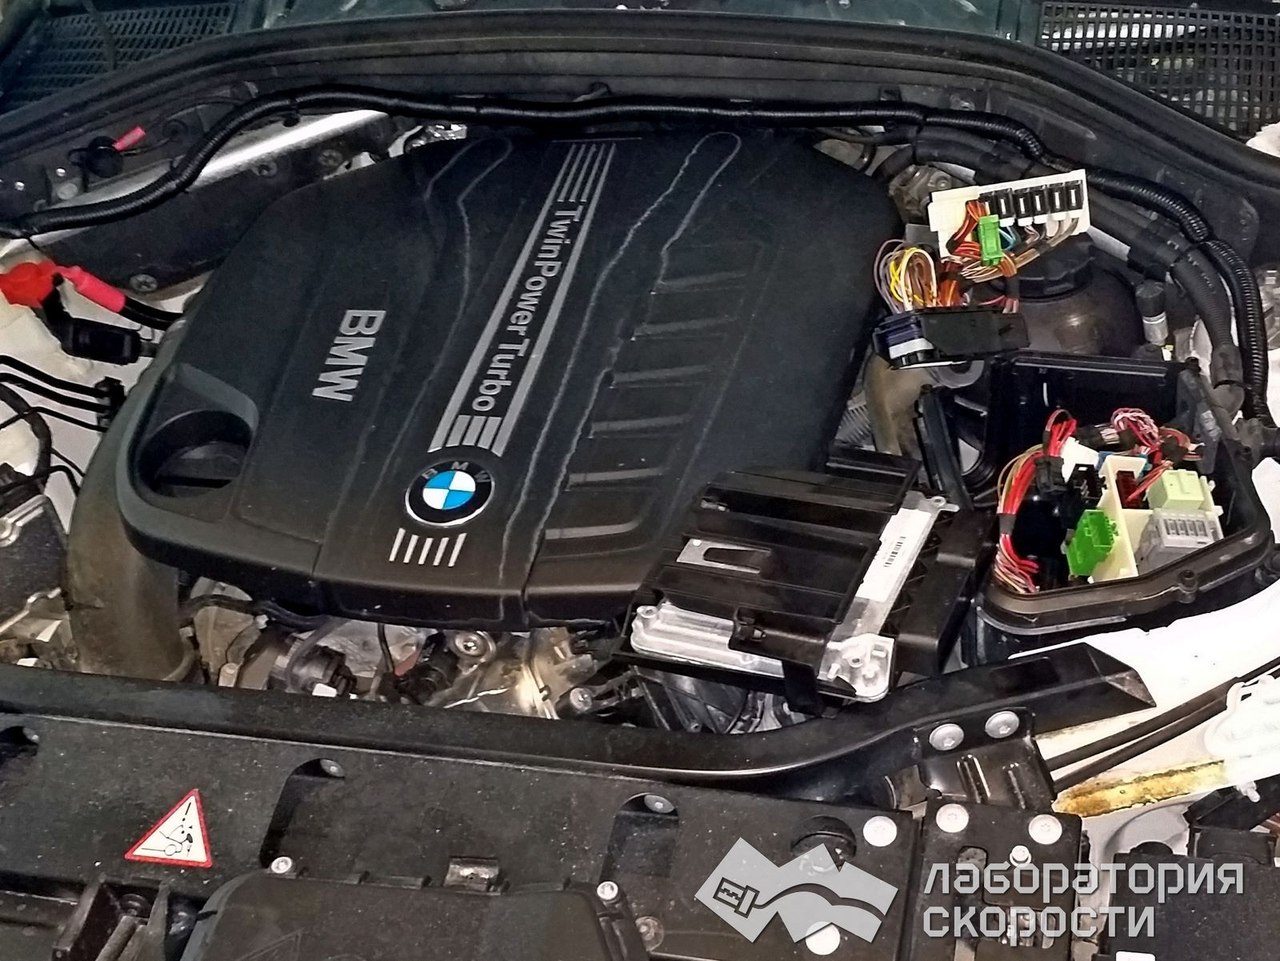 Чип-тюнинг BMW X3 F25 3.0d. УДаление сажевого фильтра и ЕГР. Отчет